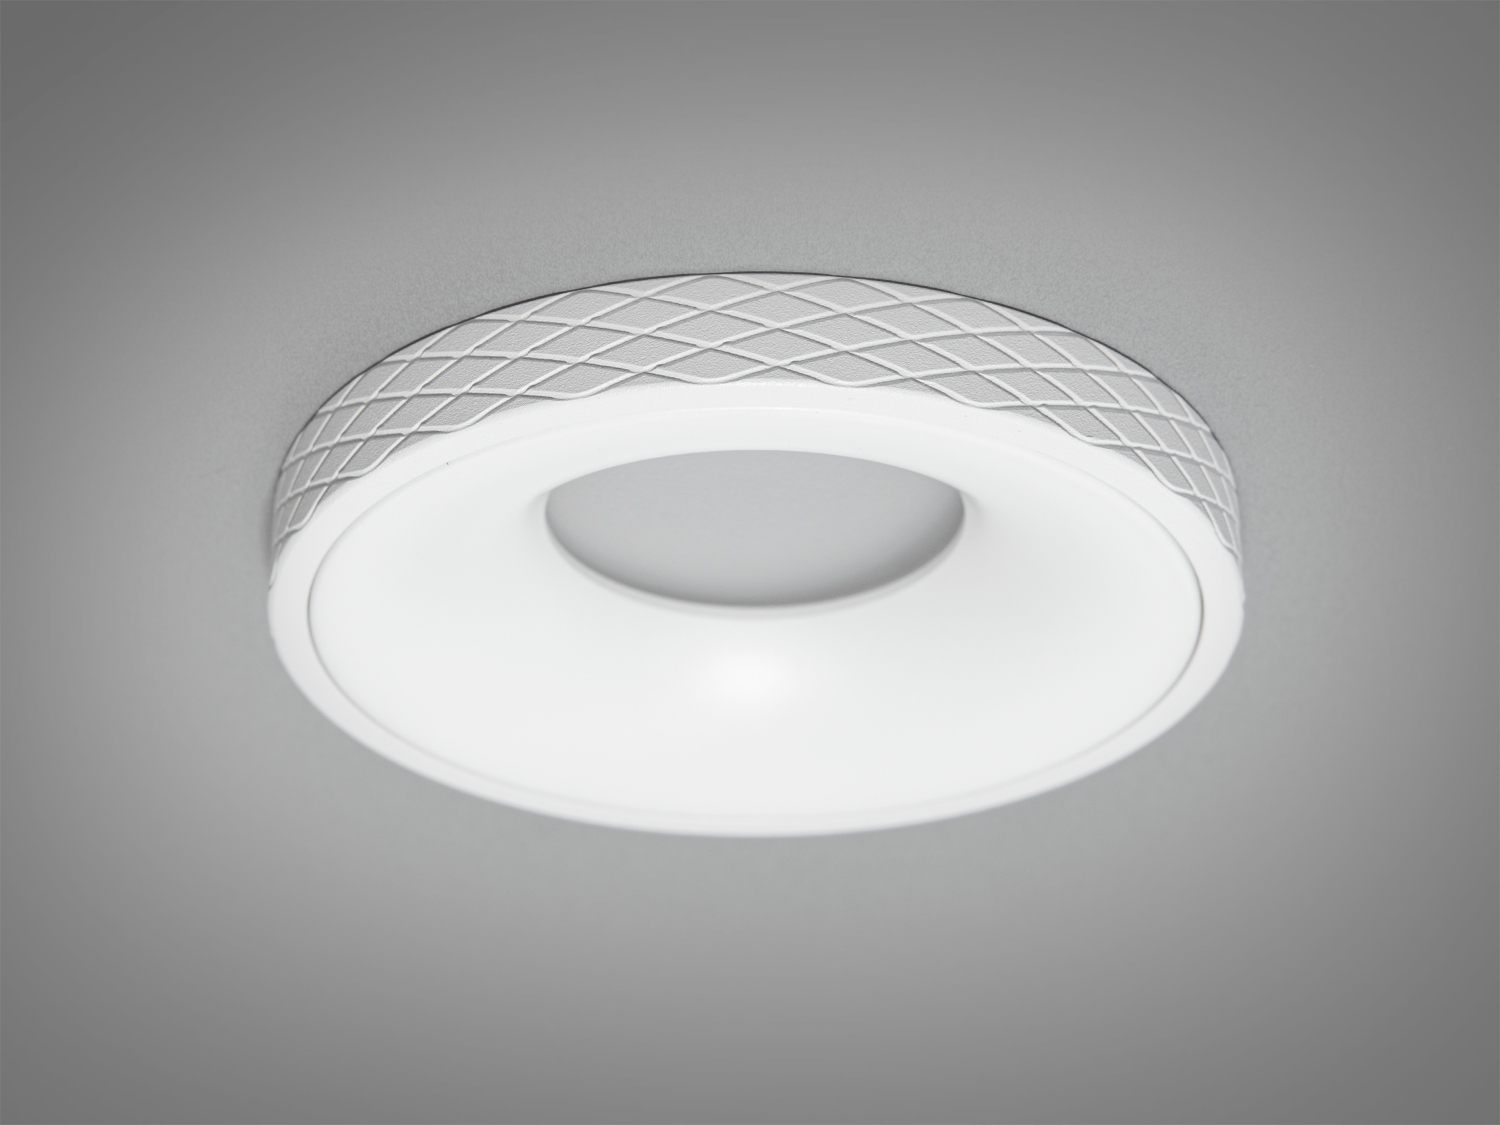 Білий круглий точковий світильник з алюмінію. Декоративні світильники 